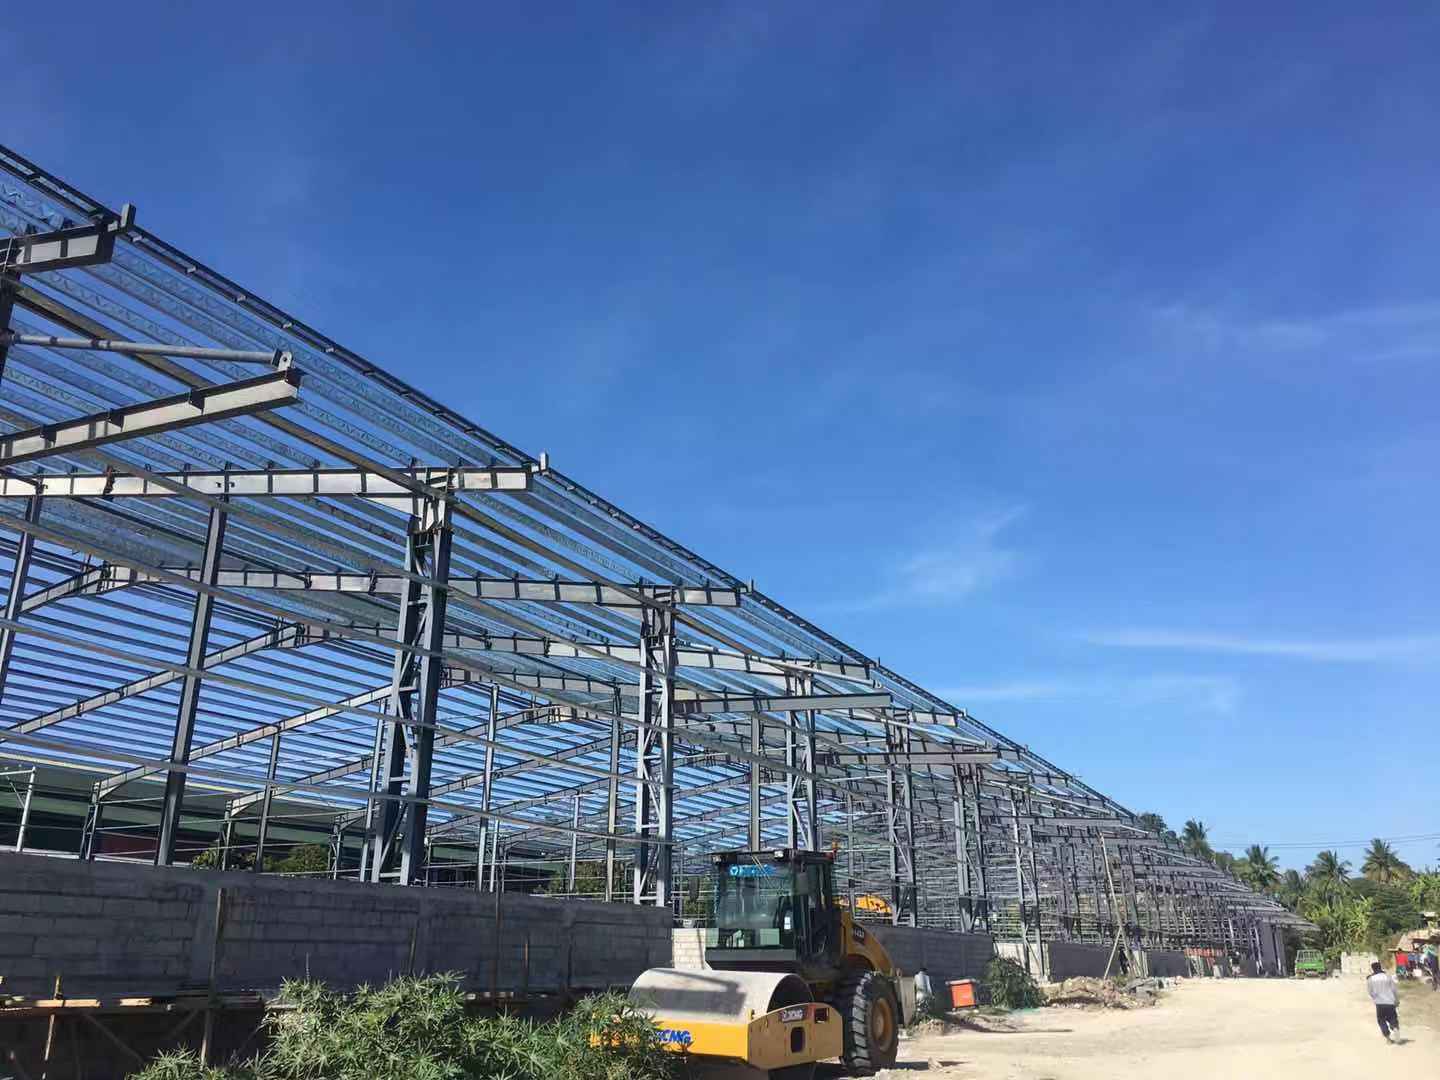 兰州中川国际机场三期扩建工程航站楼工程（一标段）项目钢结构屋面钢桁架顺利提升